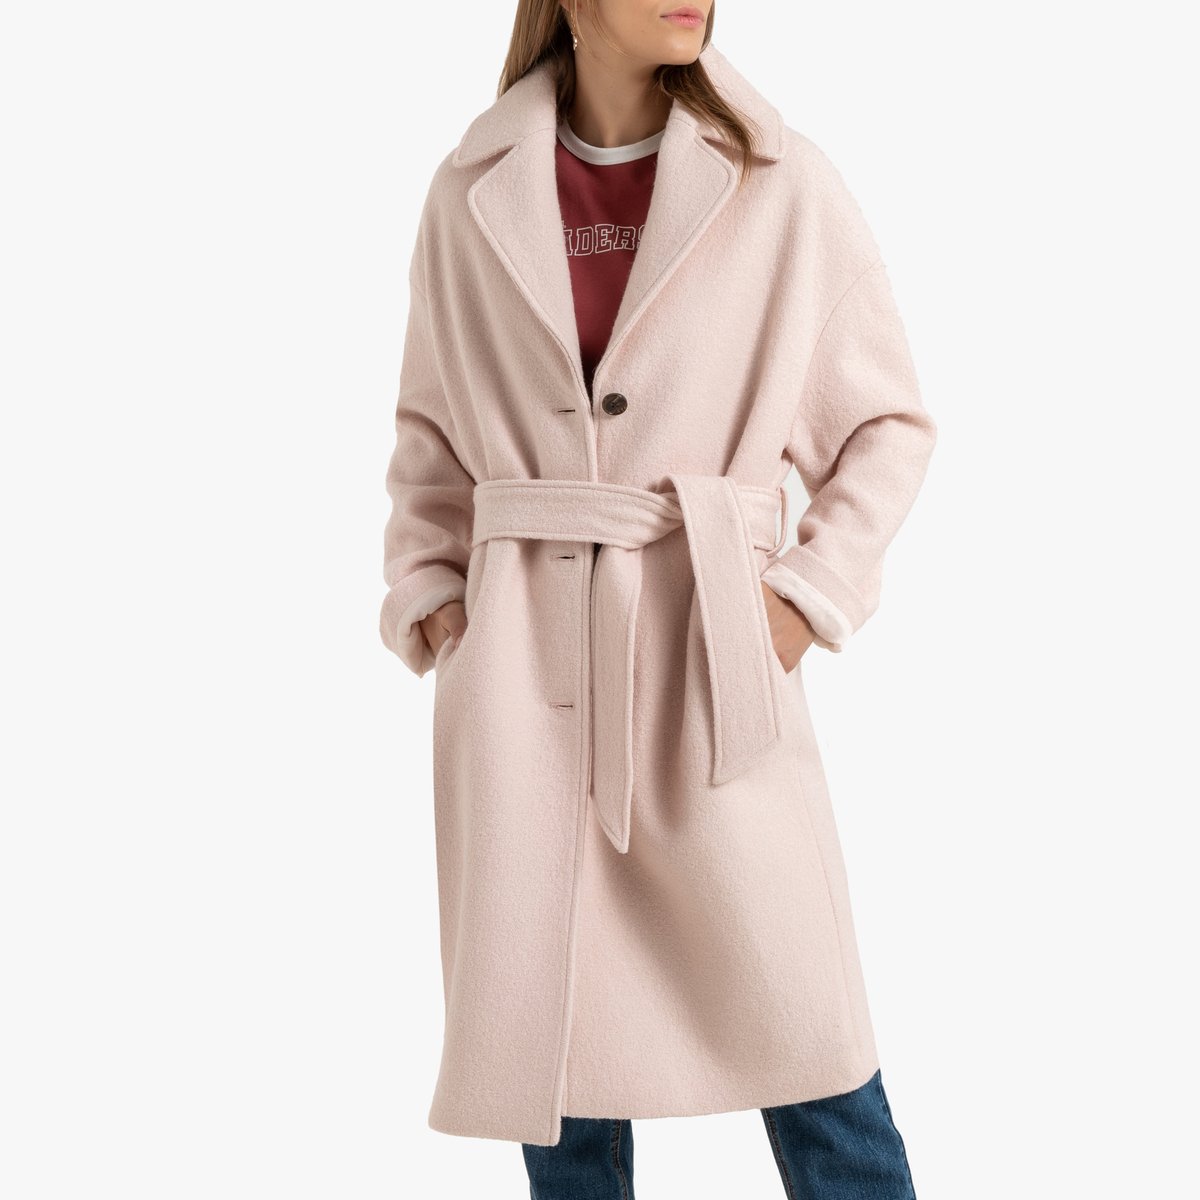 Пальто La Redoute Средней длины 42 (FR) - 48 (RUS) розовый, размер 42 (FR) - 48 (RUS) Средней длины 42 (FR) - 48 (RUS) розовый - фото 1